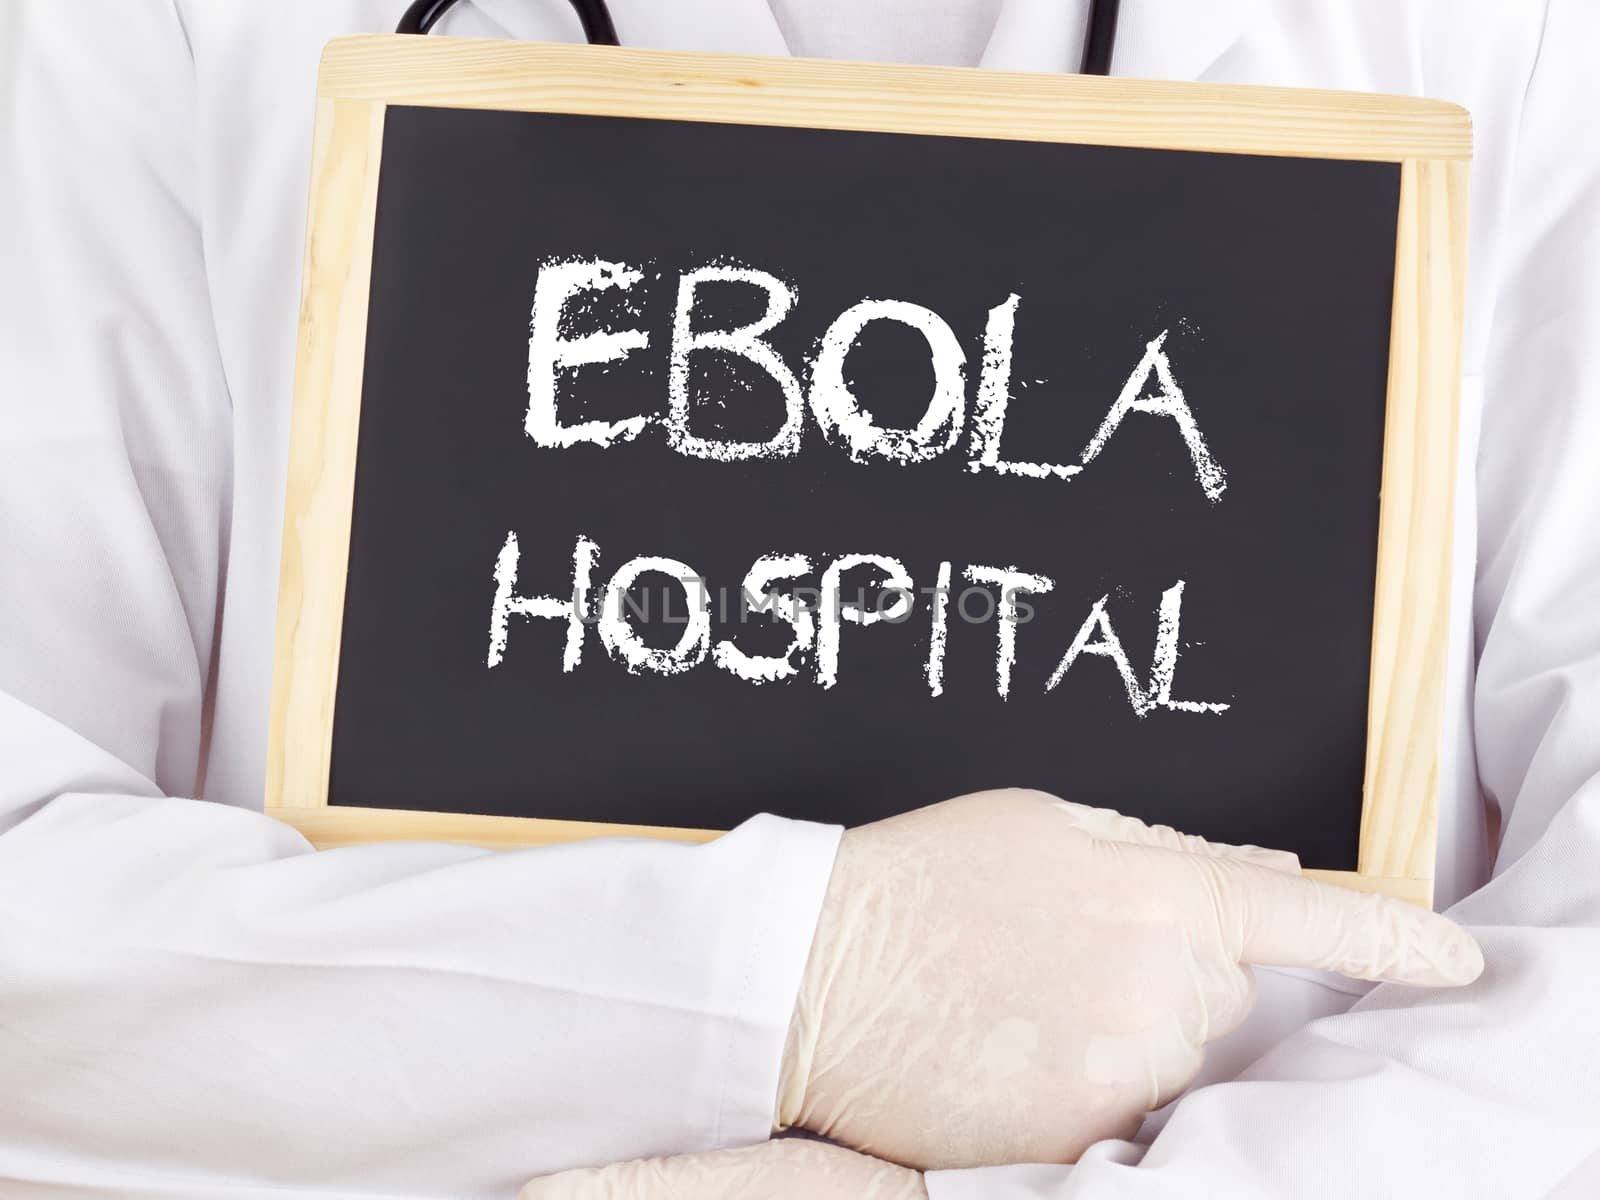 Doctor shows information: Ebola hospital